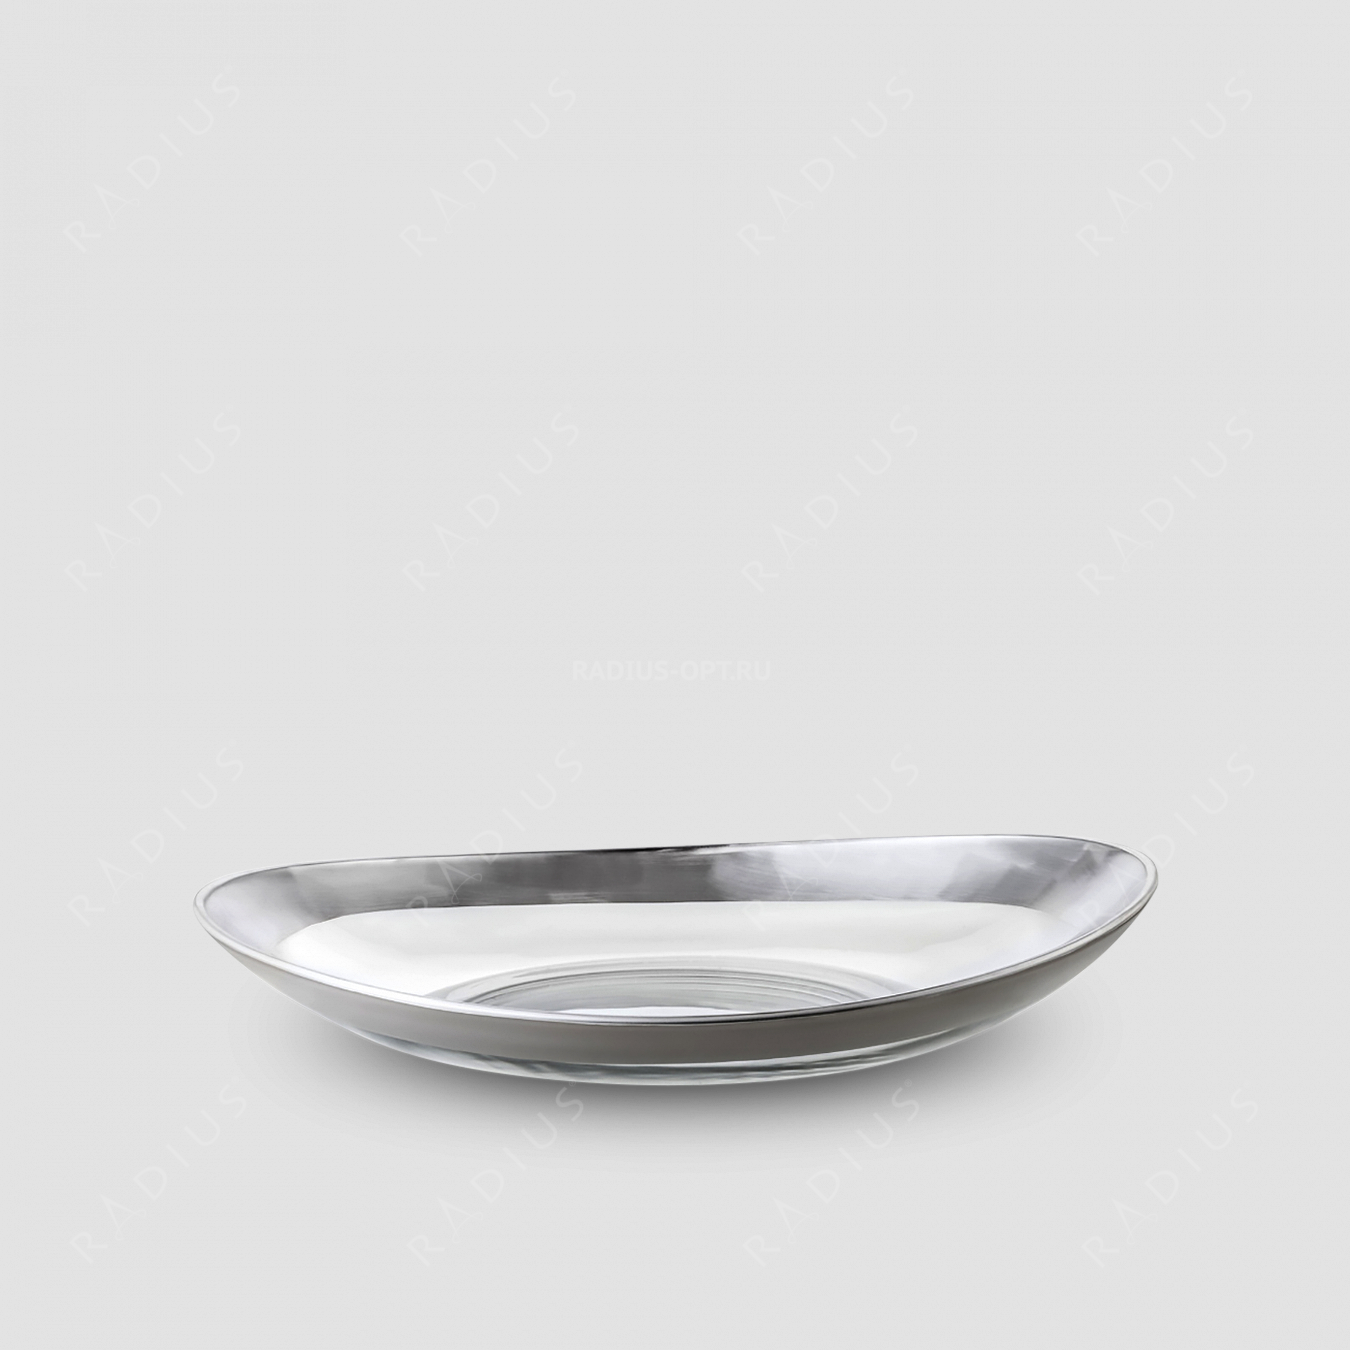 Блюдо , диаметр: 40 см, материал: бессвинцовый хрусталь, цвет: серебро, серия Cosmo, EISCH, Германия